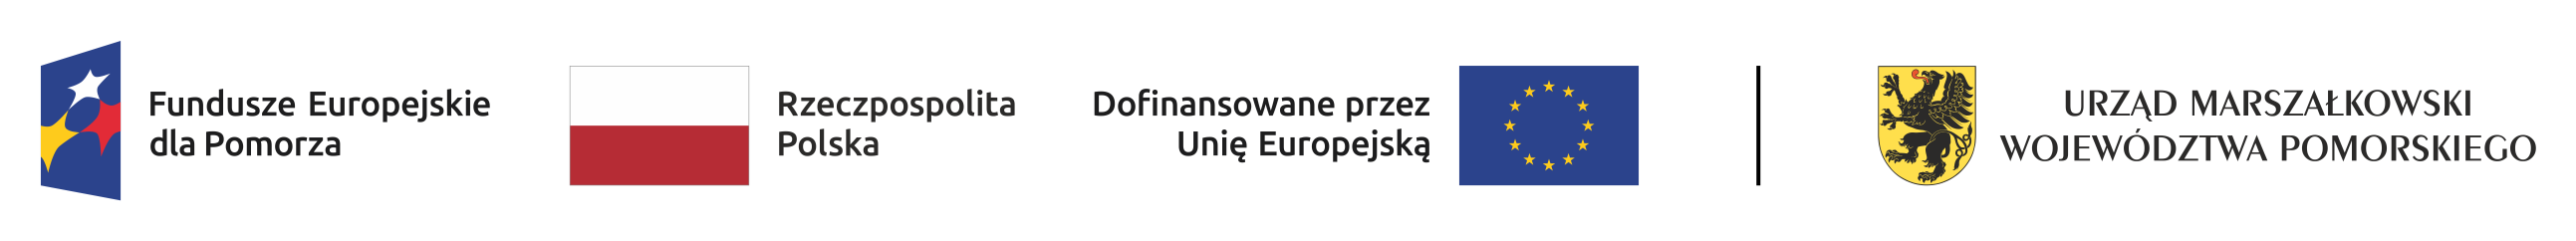 Logo zawierające cztery grafiki - Funduszy Europejskich dla Pomorza, flagi Rzeczpospolitej Polskiej, flagi Unii Europejskiej z adnotacją - Dofinansowane przez Unię Europejską - oraz Urzędu Marszałkowskiego Województwa Pomorskiego.